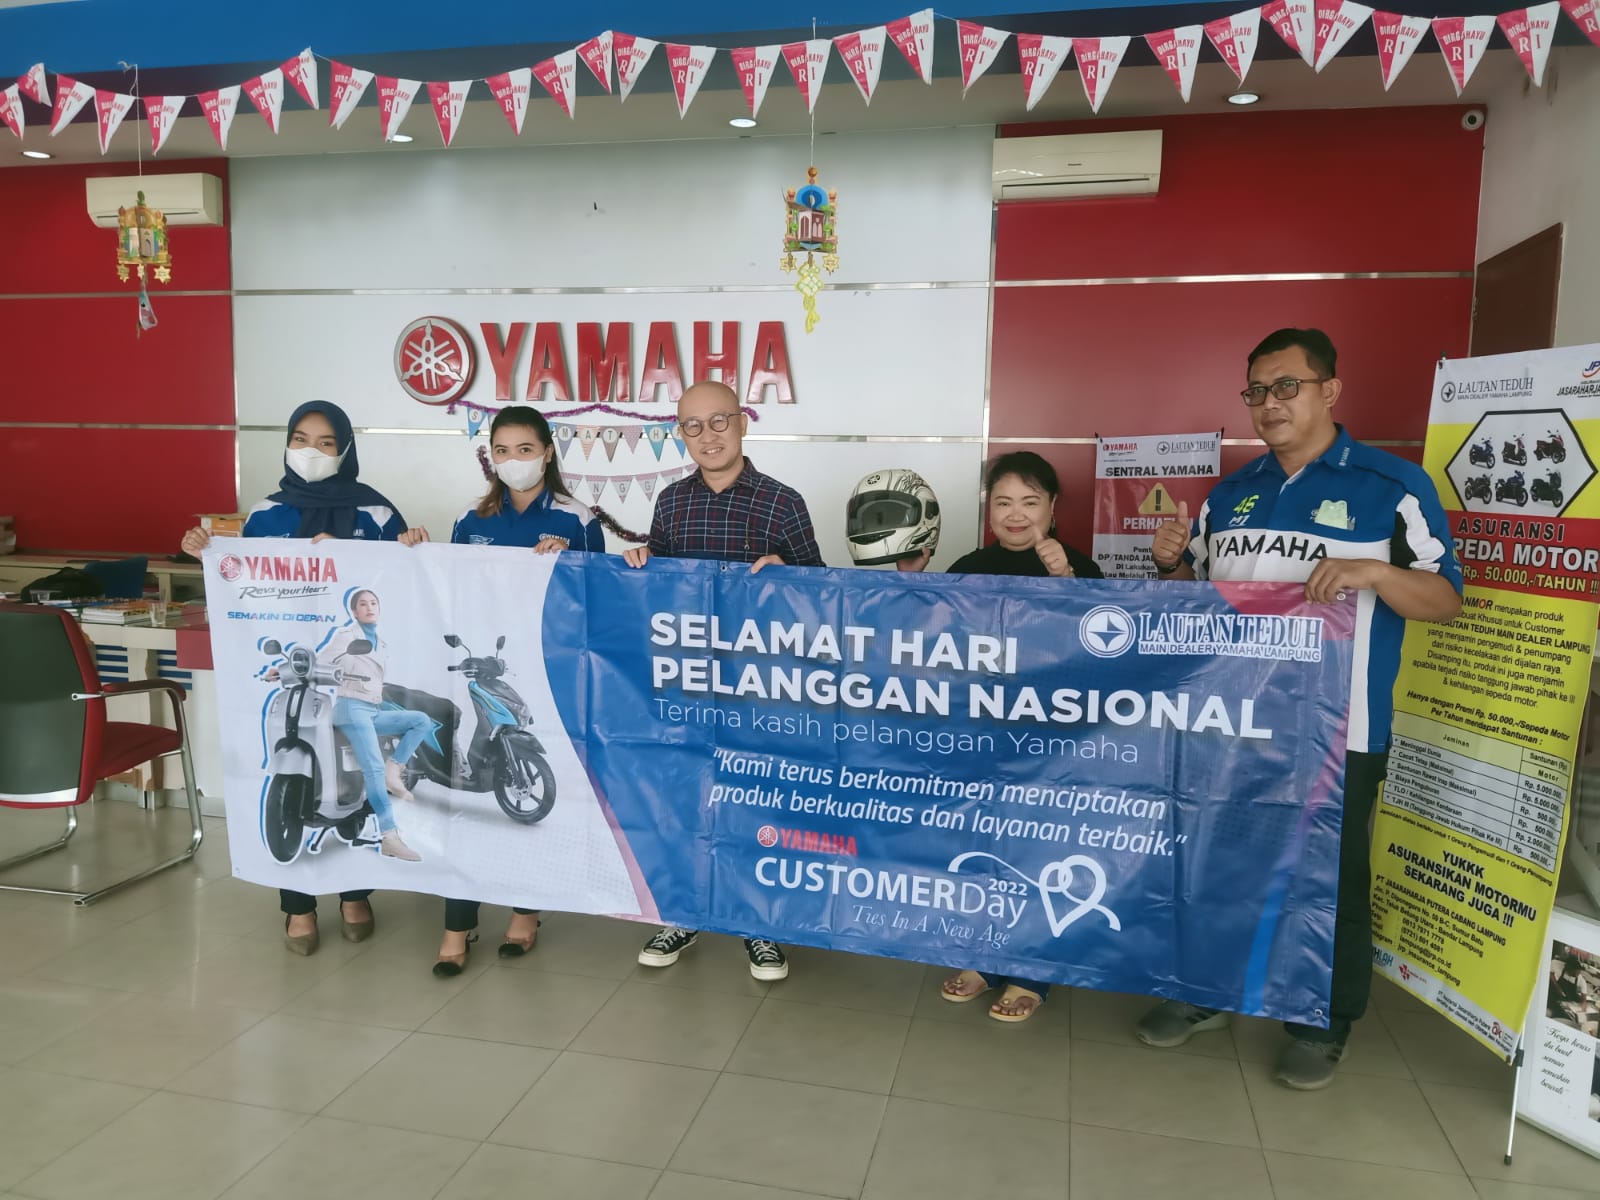 Intip Keseruan Gebyar Hari Pelanggan Nasional di Sumatera dari Yamaha 